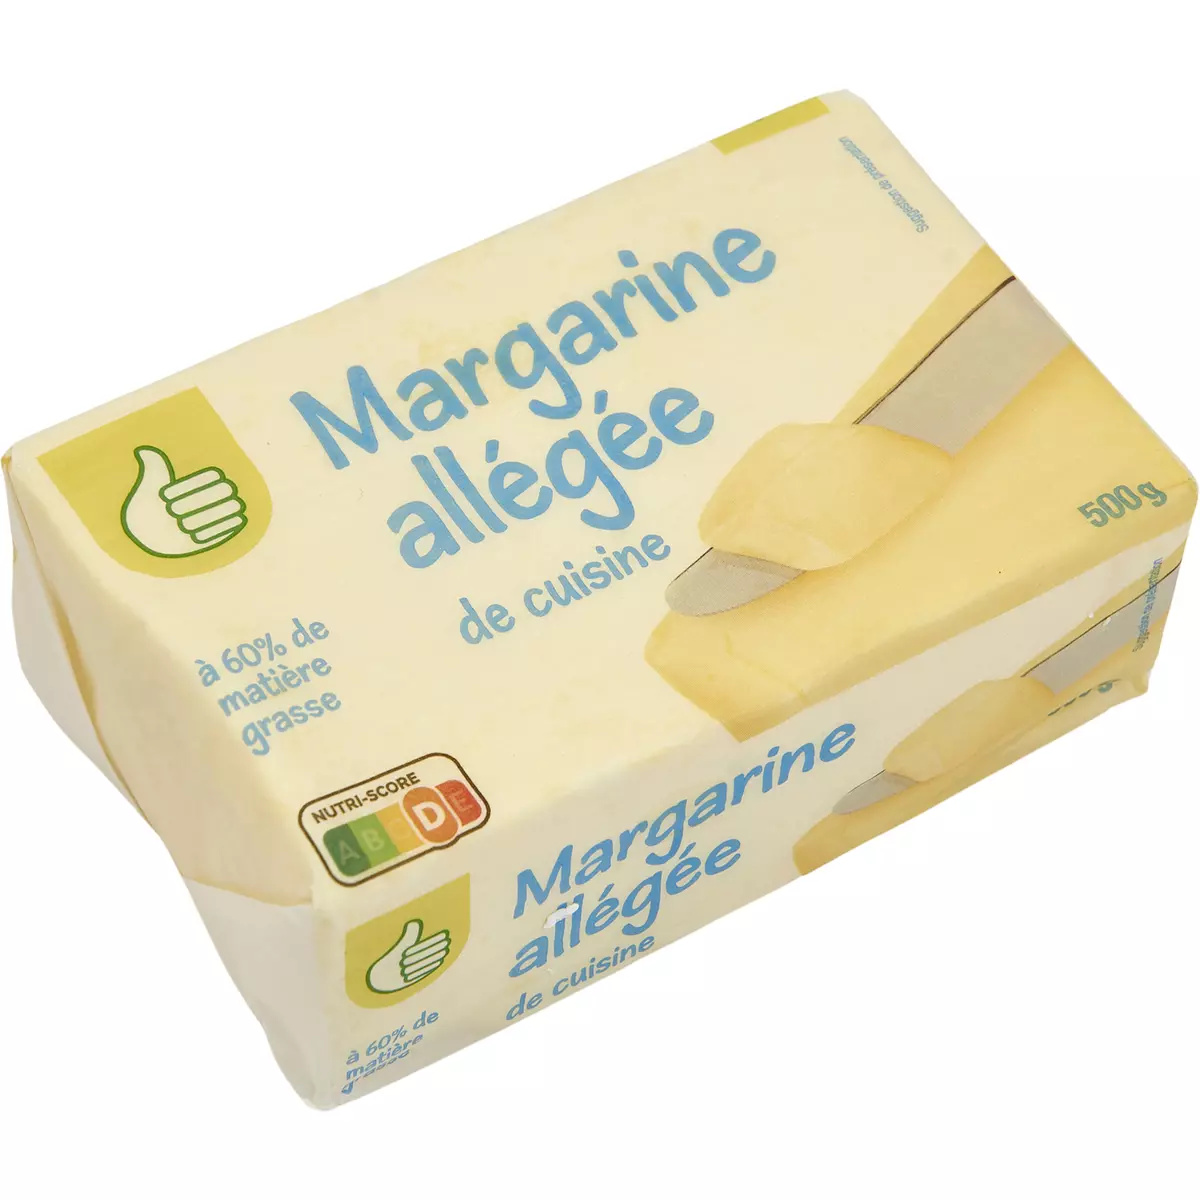 POUCE Margarine de cuisine allégée 60% MG 500g pas cher 